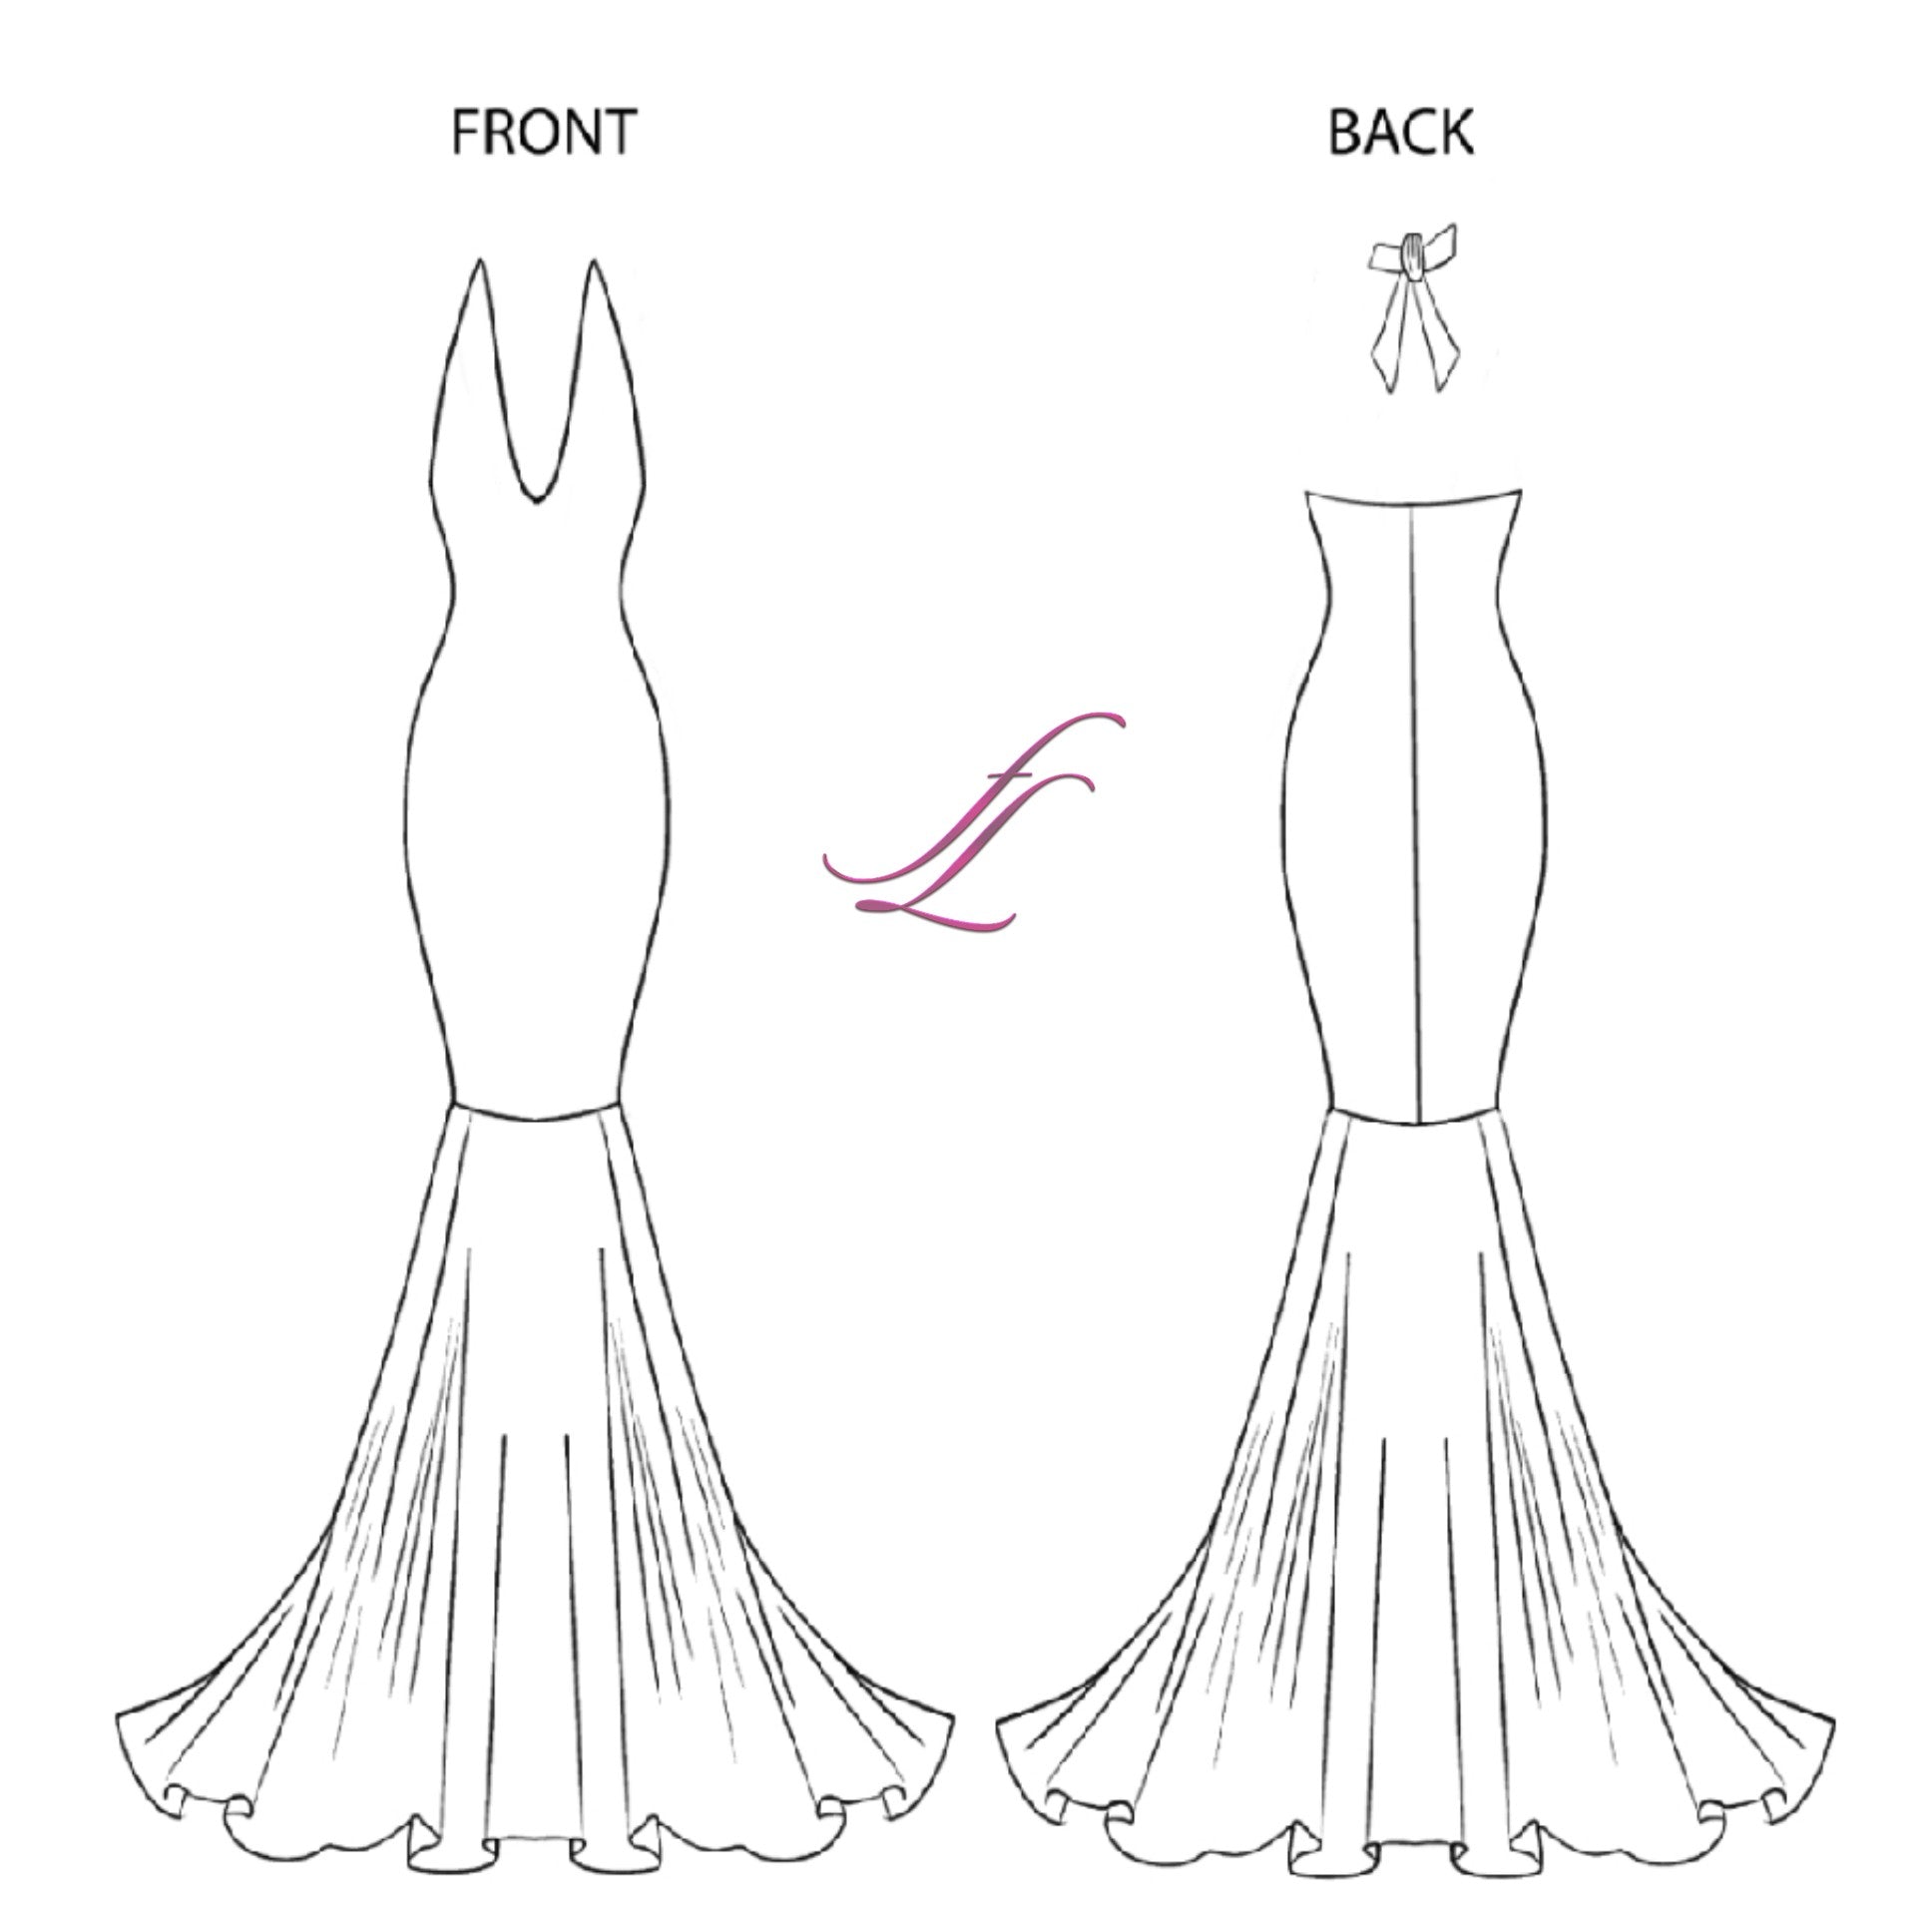 Mermaid Swirl Dress Pattern - Clearance Sale